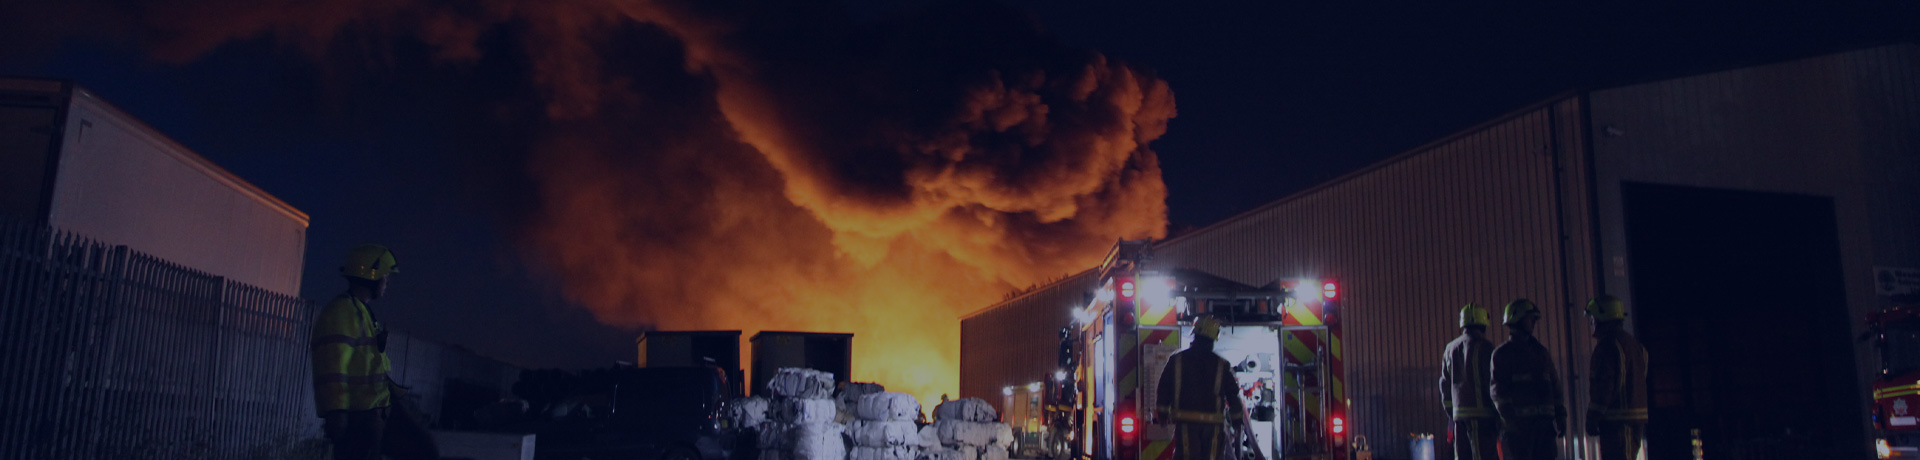 Un incendie dans un entrepôt